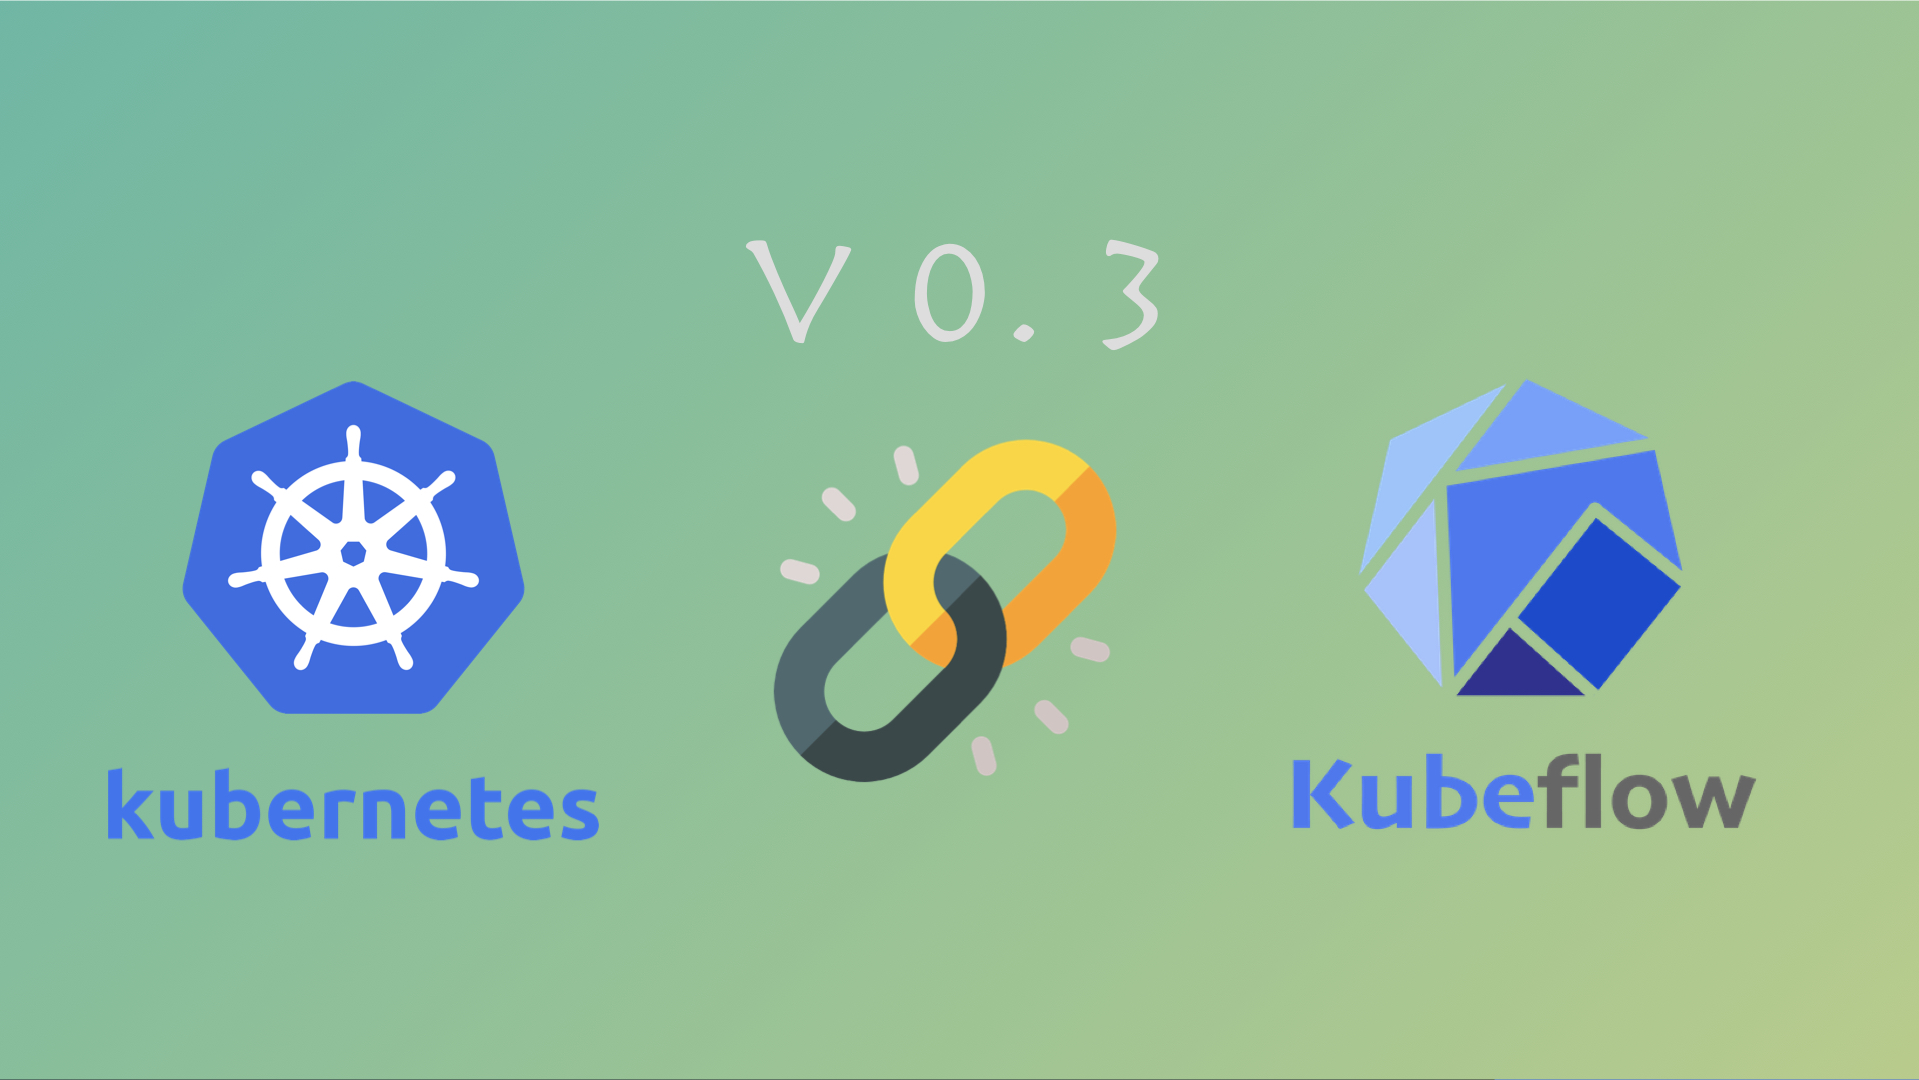 快速部署 Kubeflow v0.3 容器機器學習平台